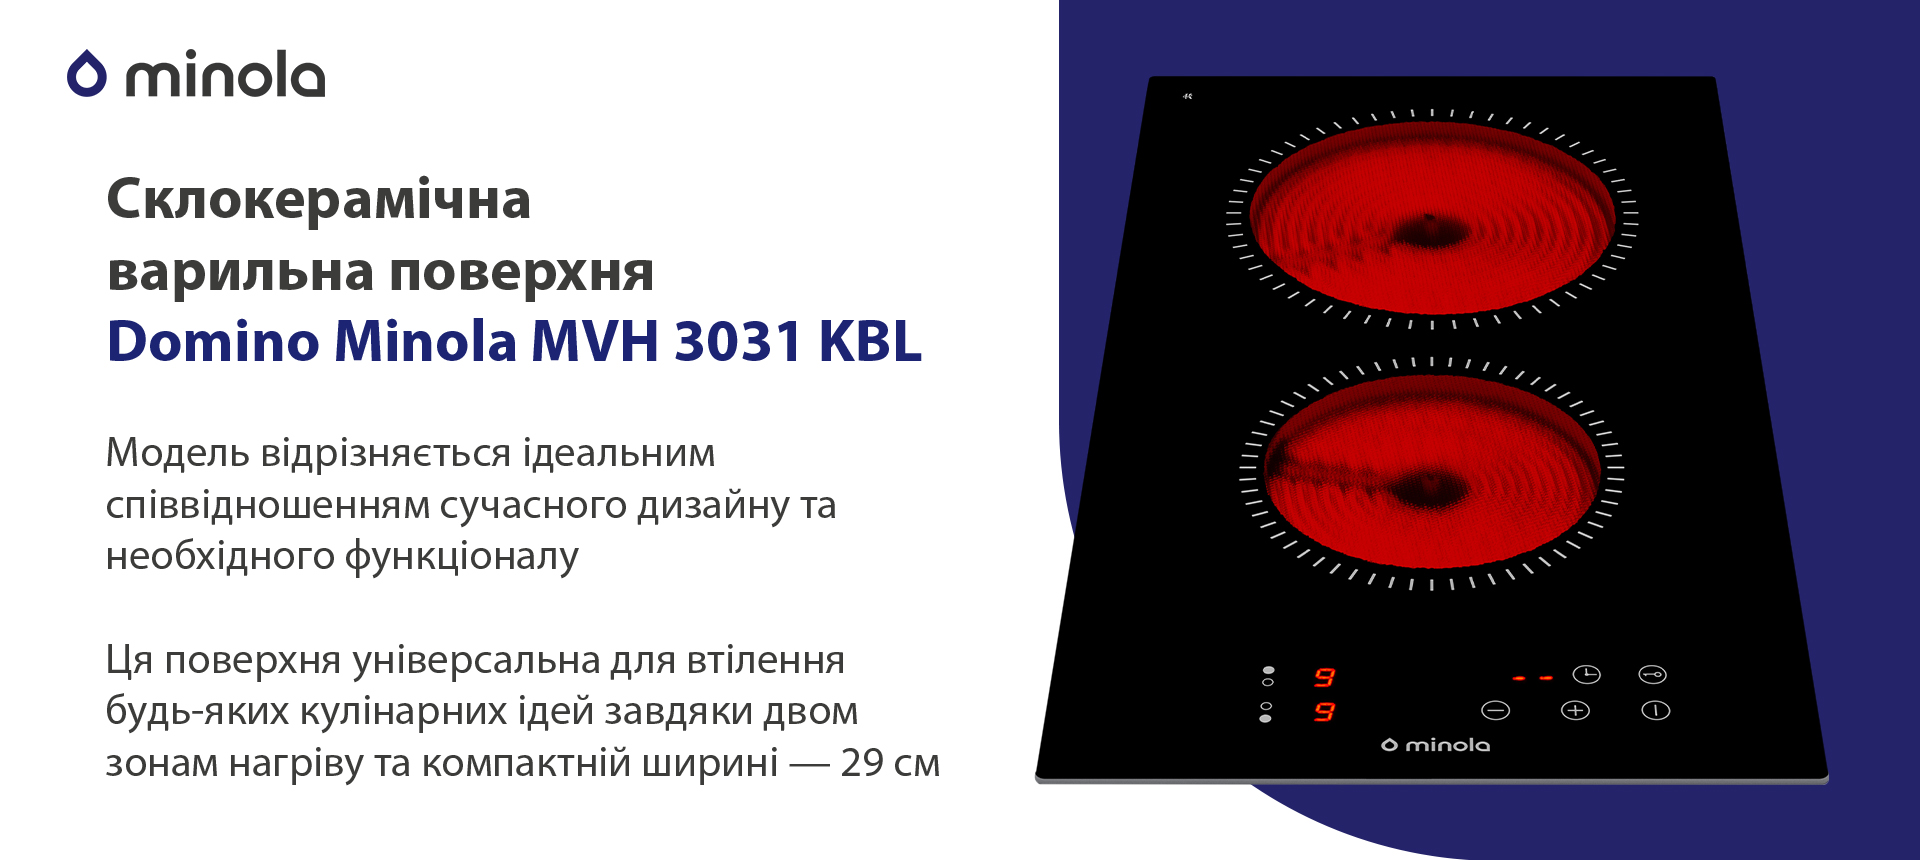 Електрична варильна поверхня Minola Domino MVH 3031 KBL зовнішній вигляд - фото 9